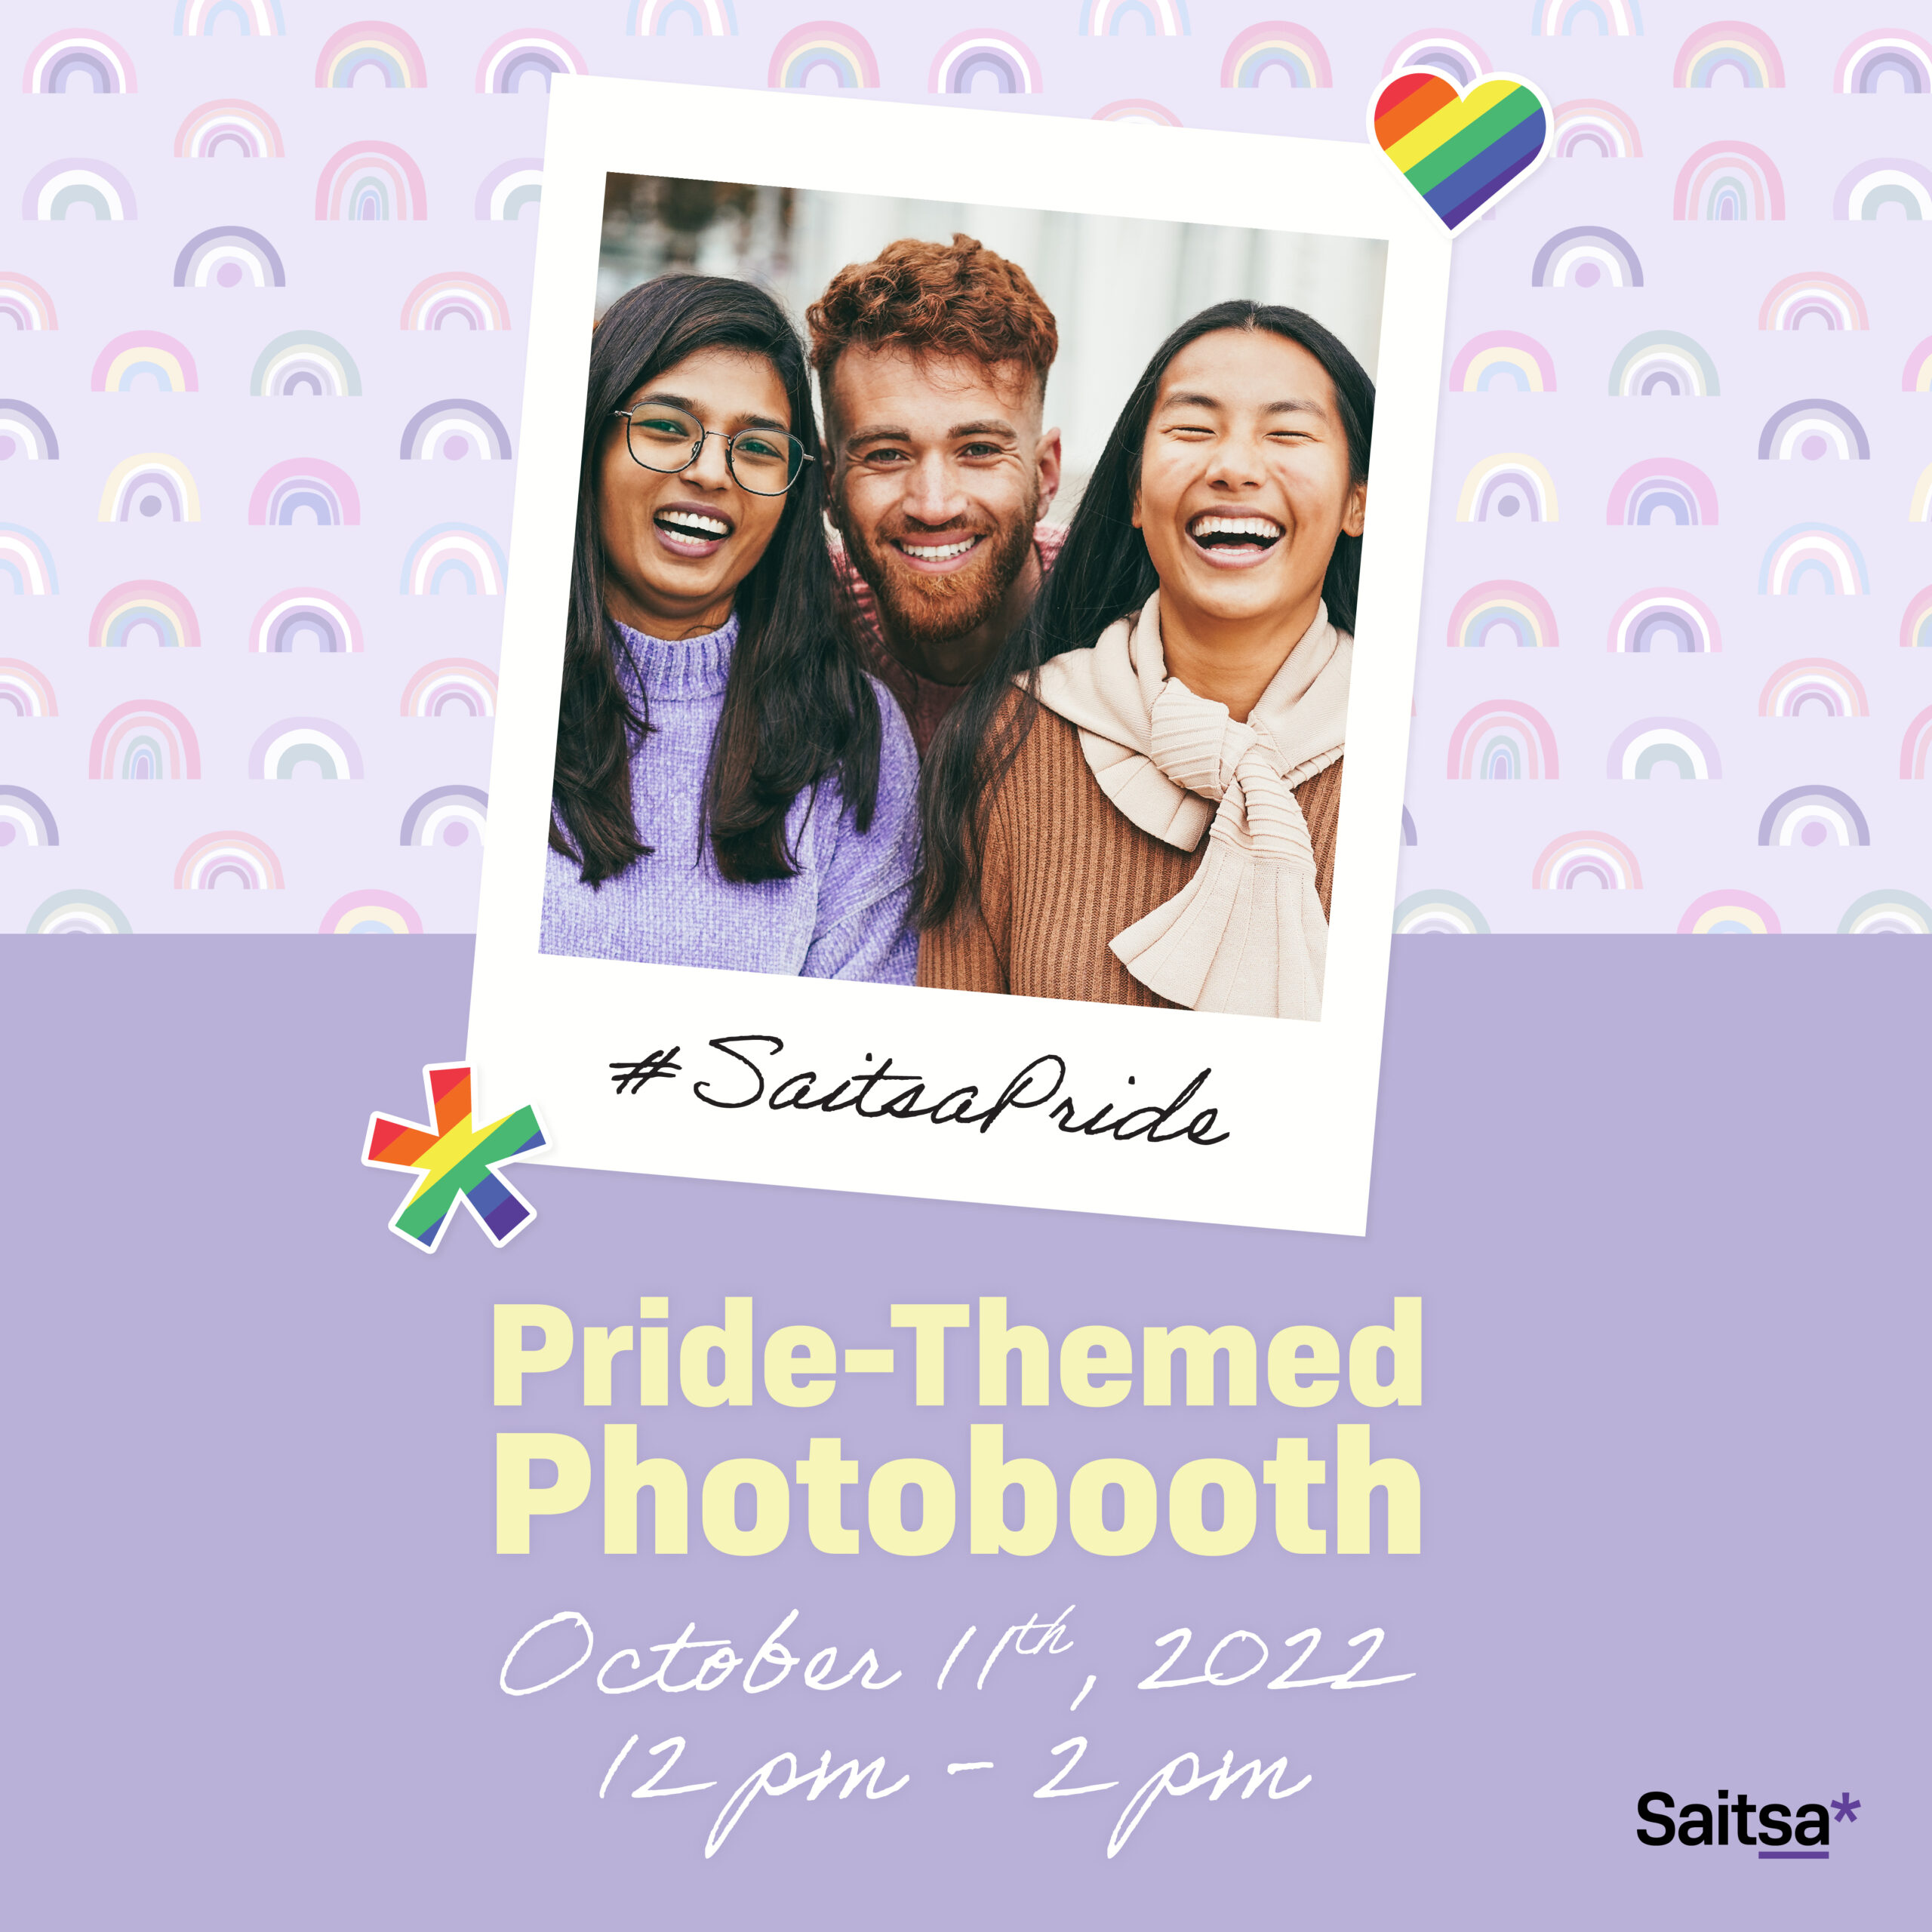 Saitsa Pride Photobooth Saitsa Pride Photobooth 2022 Insta Slide 01 1 scaled